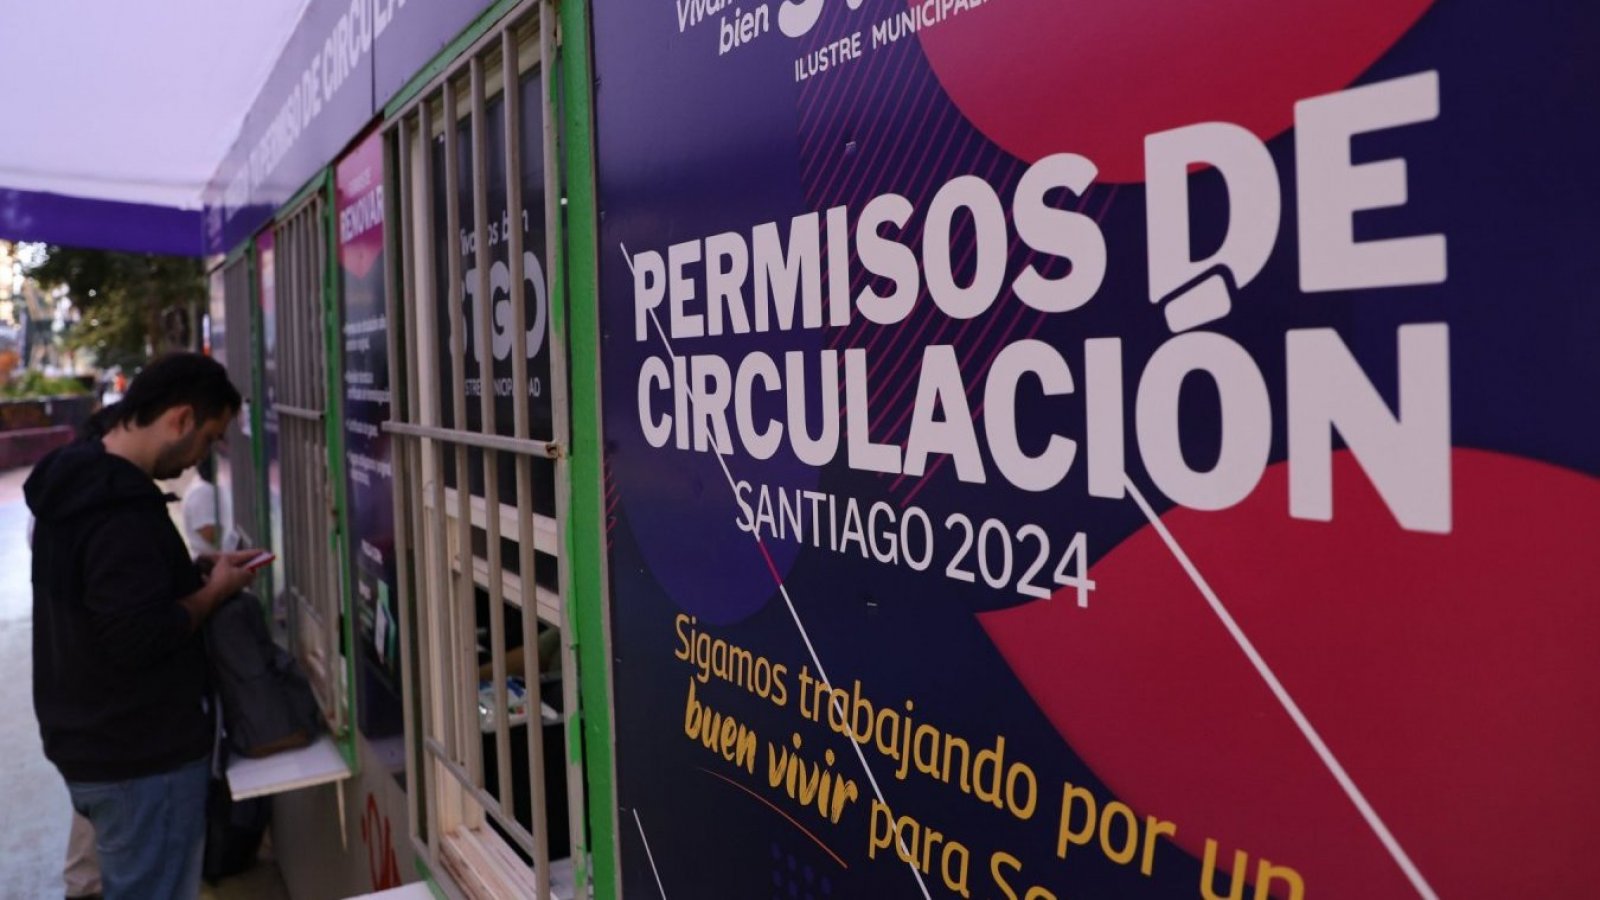 Permiso de circulación Santiago 2024